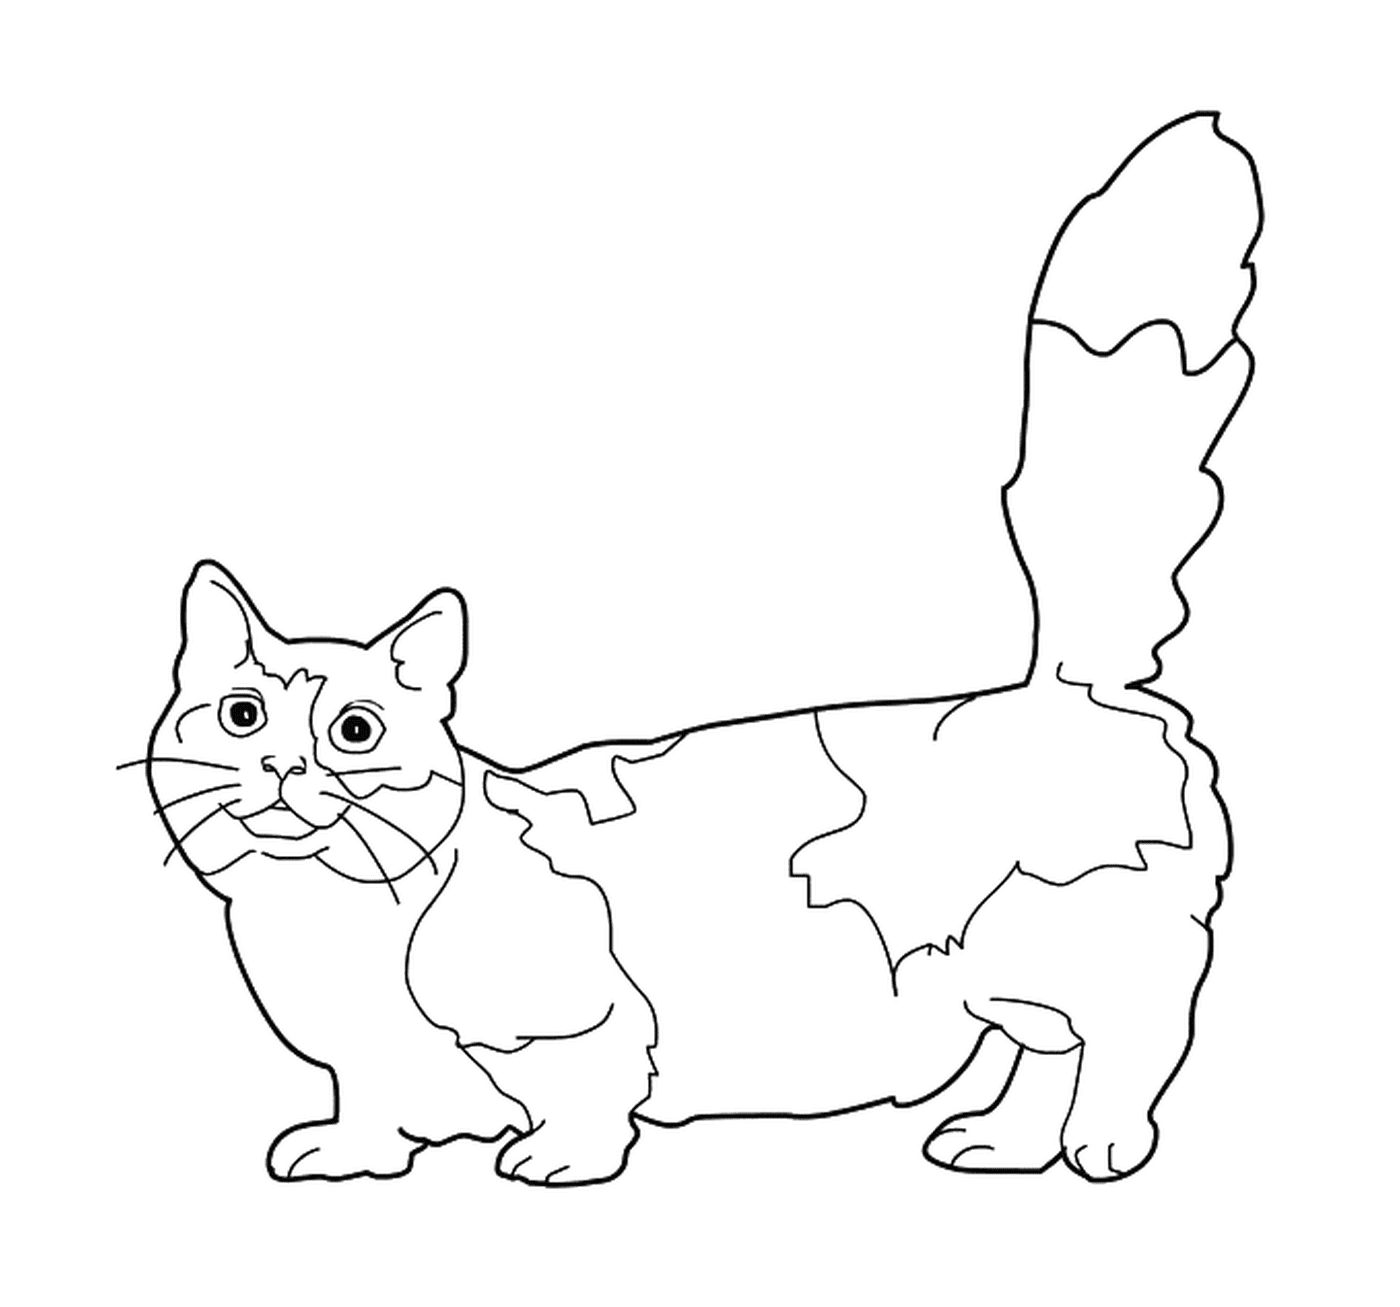  曼奇金,一只短腿猫 